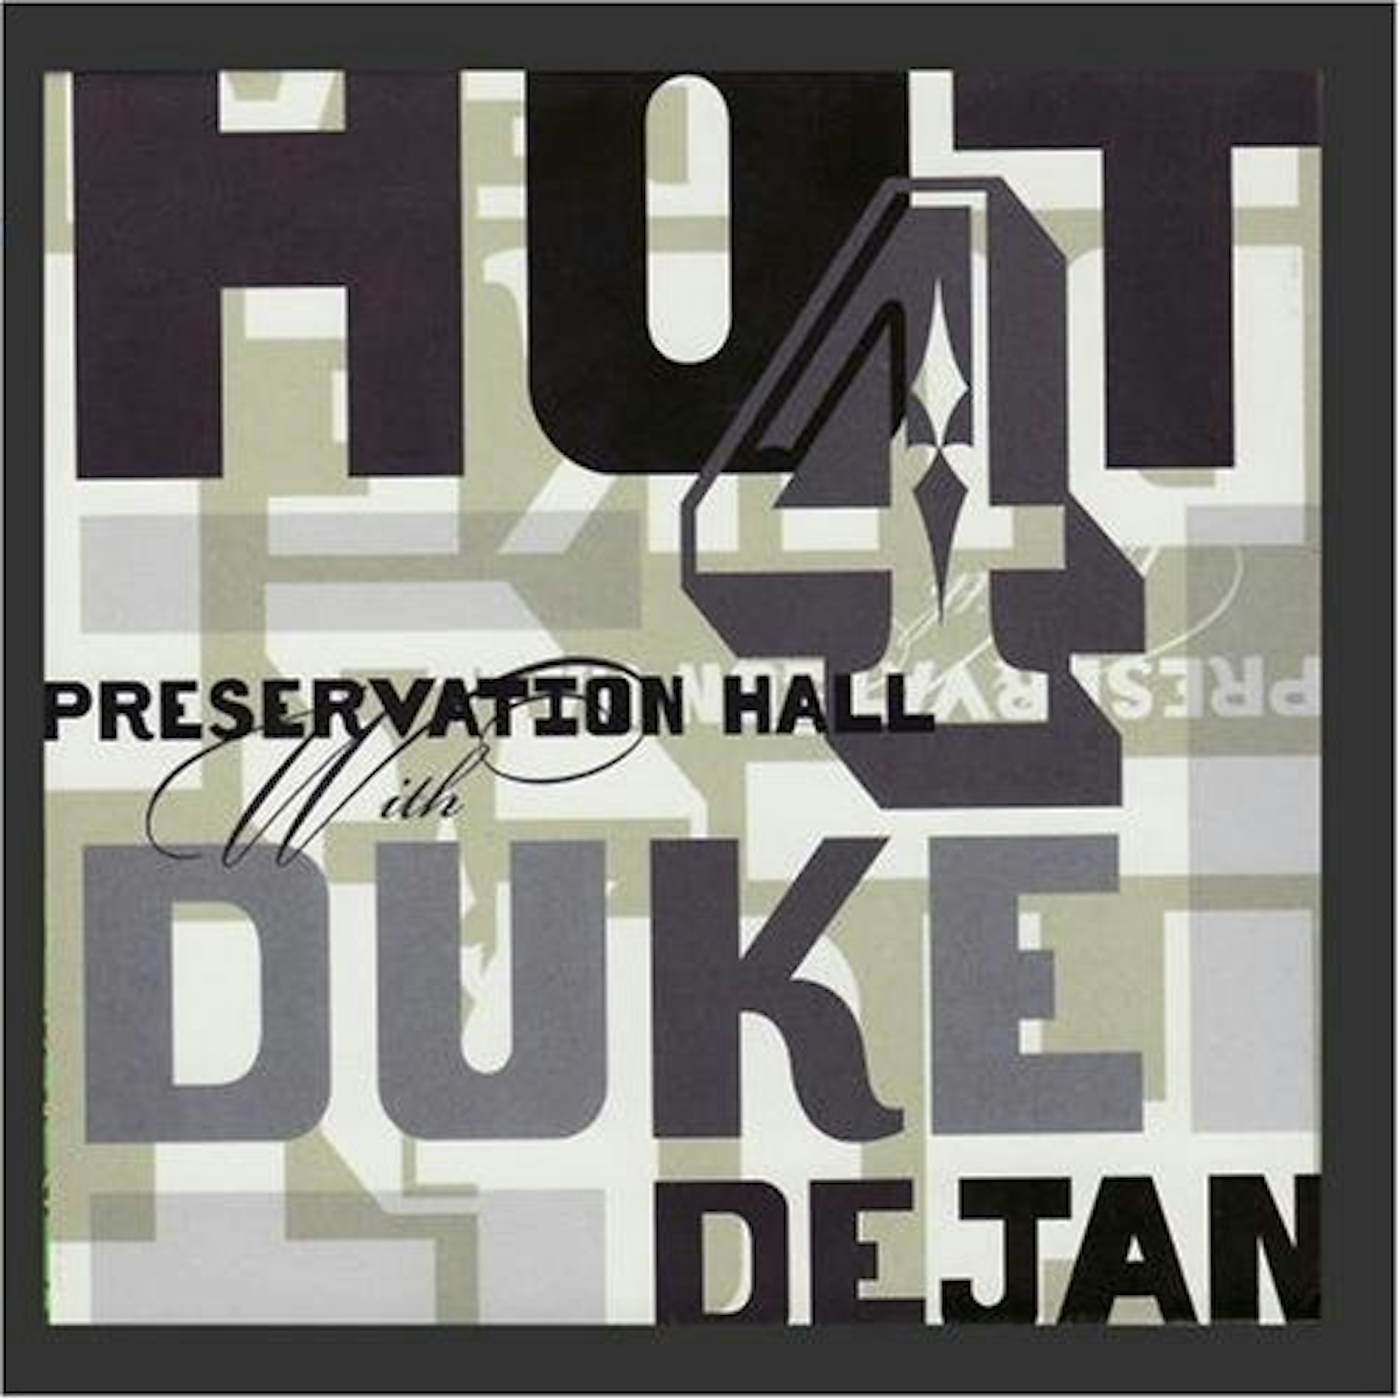 Preservation Hall Jazz Band PRESERVATION HALL HOT 4 WITH DUKE DEJAN CD